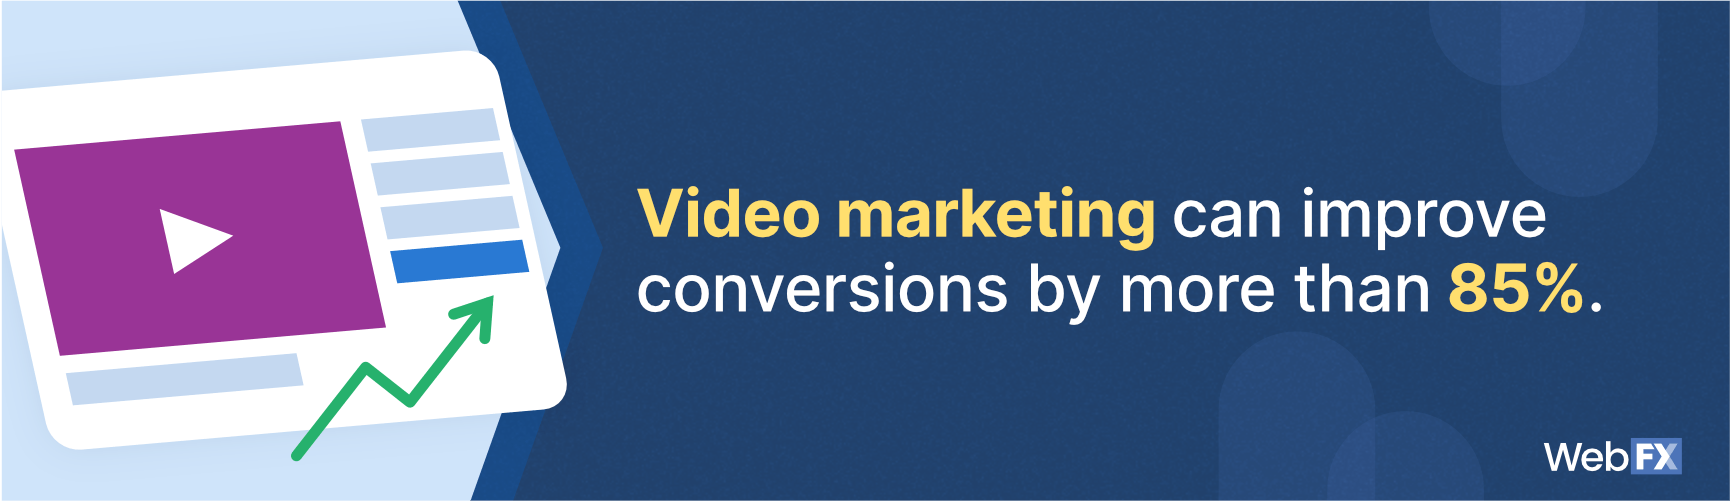 视频营销可以提高转化率